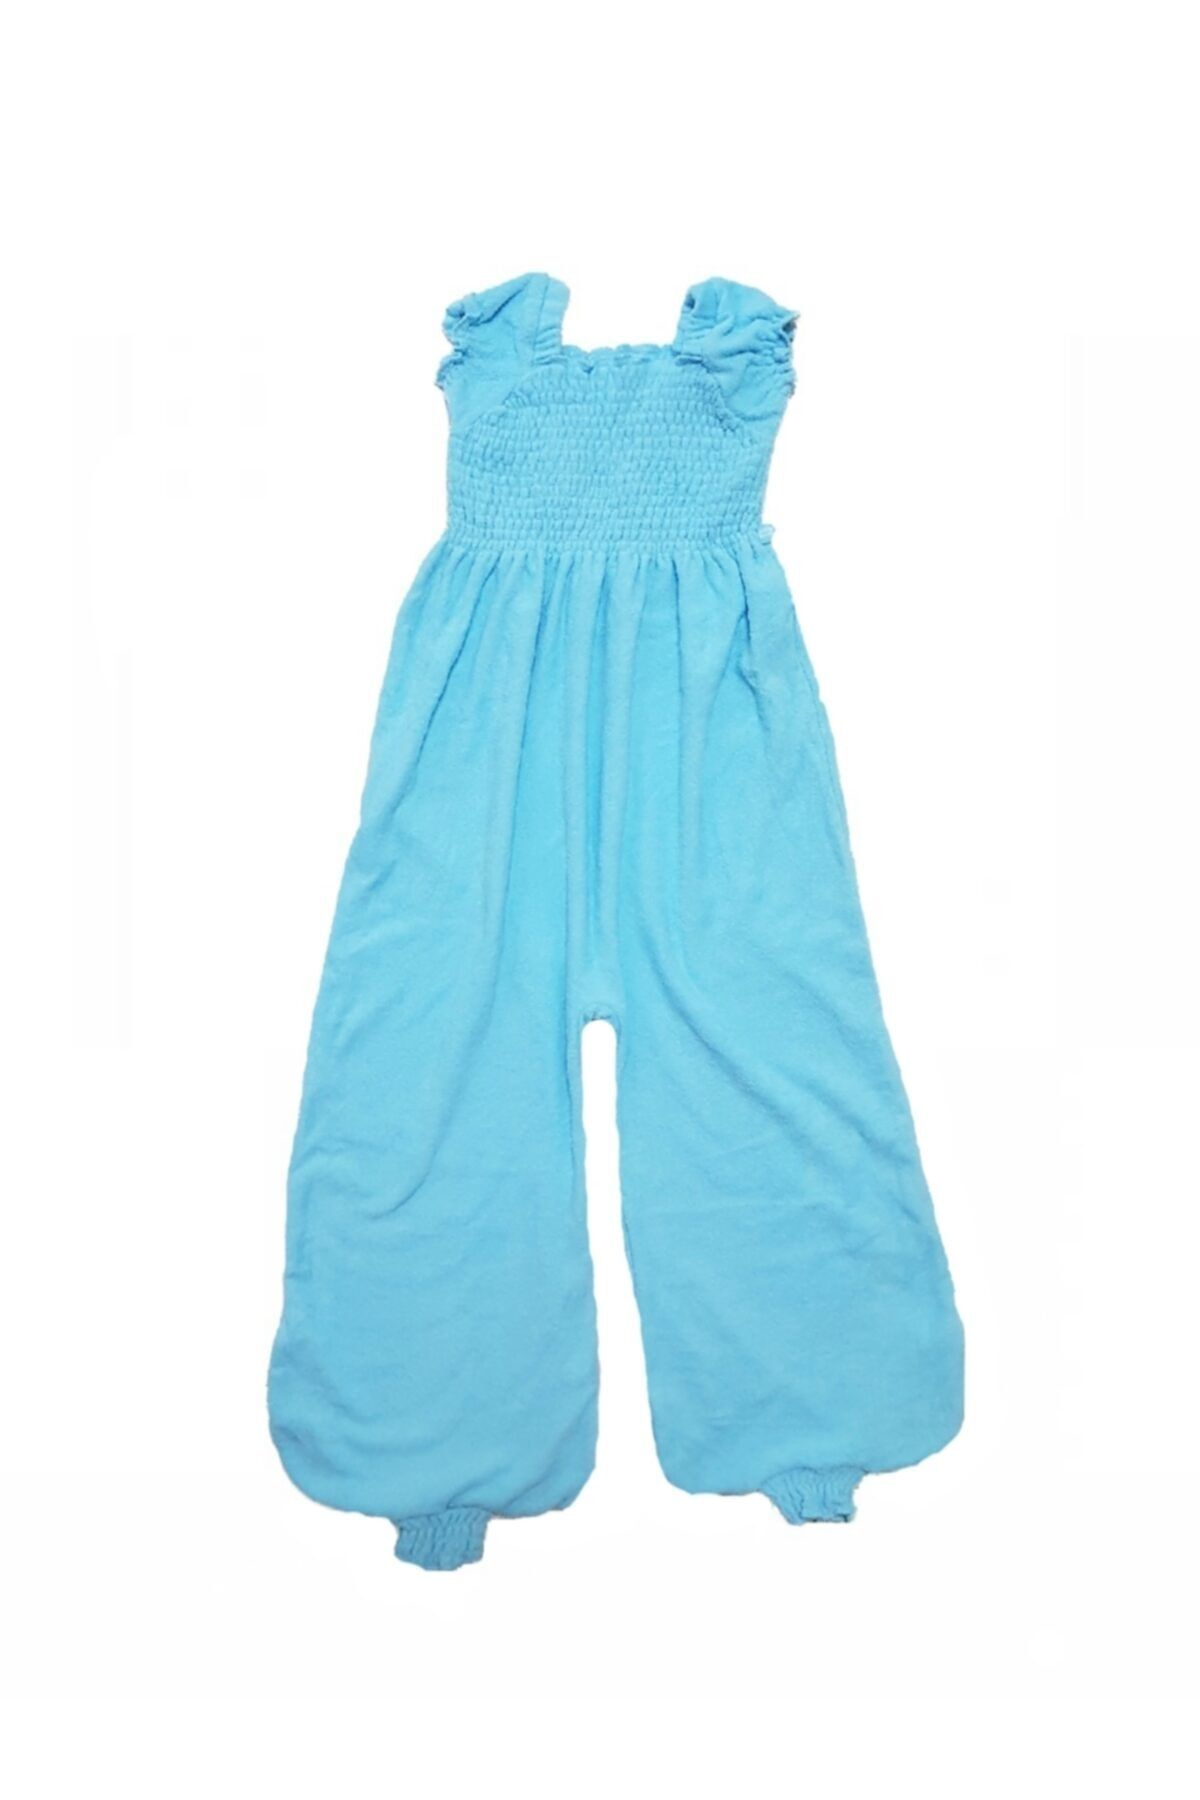 Alpar Tekstil Kız Çocuk Plaj Elbisesi / Piko Tulum 7-10 Yaş-turkuaz